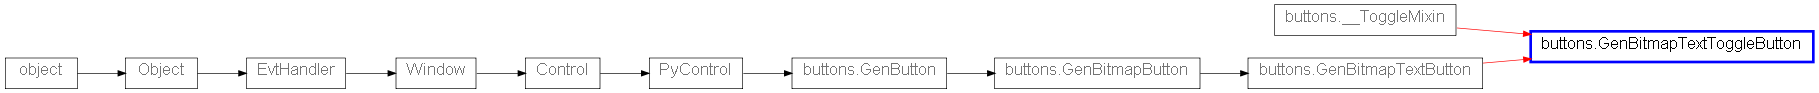 Inheritance diagram of GenBitmapTextToggleButton